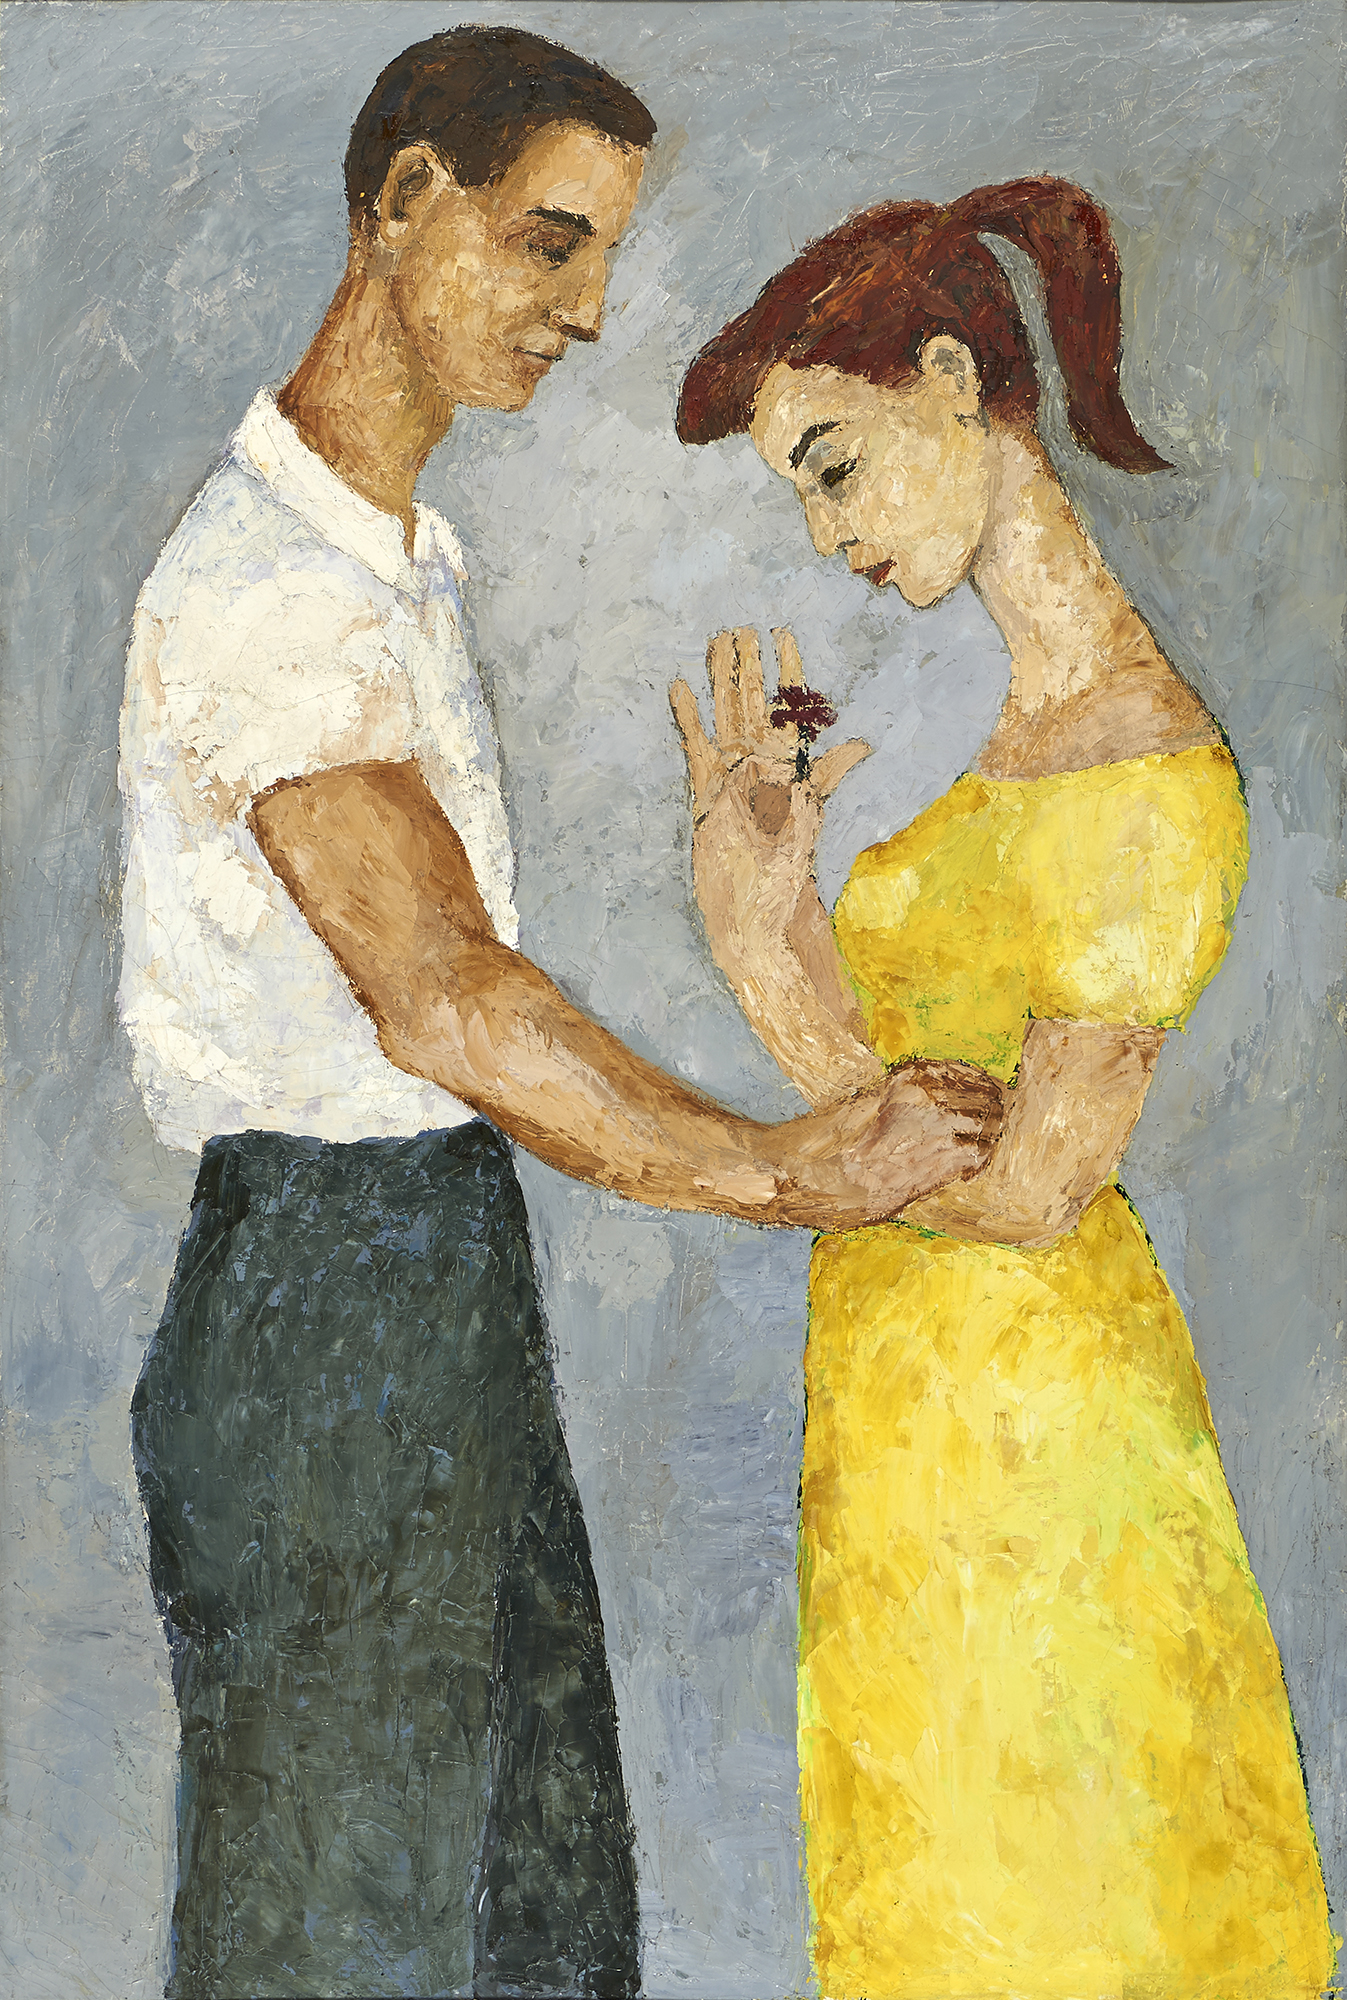 Fotografia obrazu autorstwa Janiny Jasińskiej-Luterek pod tytułem „Zakochani”, namalowanego farbami olejnymi na płótnie około 1955 roku. Kobieta i mężczyzna vis a vis, w ujęciu do kolan. Kobieta w lewym profilu, z lekko pochyloną głową; włosy brązowo-czerwone, zaczesane z tyłu w koński ogon; ubrana w sukienkę w kolorze żółto-cytrynowym, z krótkimi rękawami, dekoltem i lekko odsłoniętymi ramionami. Brwi i oczy czarne, usta czerwone, karnacja jasna. W dłoniach kobiety czerwony goździk. Mężczyzna w prawym profilu z pochyloną głową; w czarnozielonkawych spodniach i białej koszuli z krótkim rękawem i kołnierzykiem. Brwi i oczy brązowe, włosy ciemnobrązowe, karnacja śniada. Prawą dłonią trzyma na lewym ramieniu kobiety. Tło gładkie, szare.